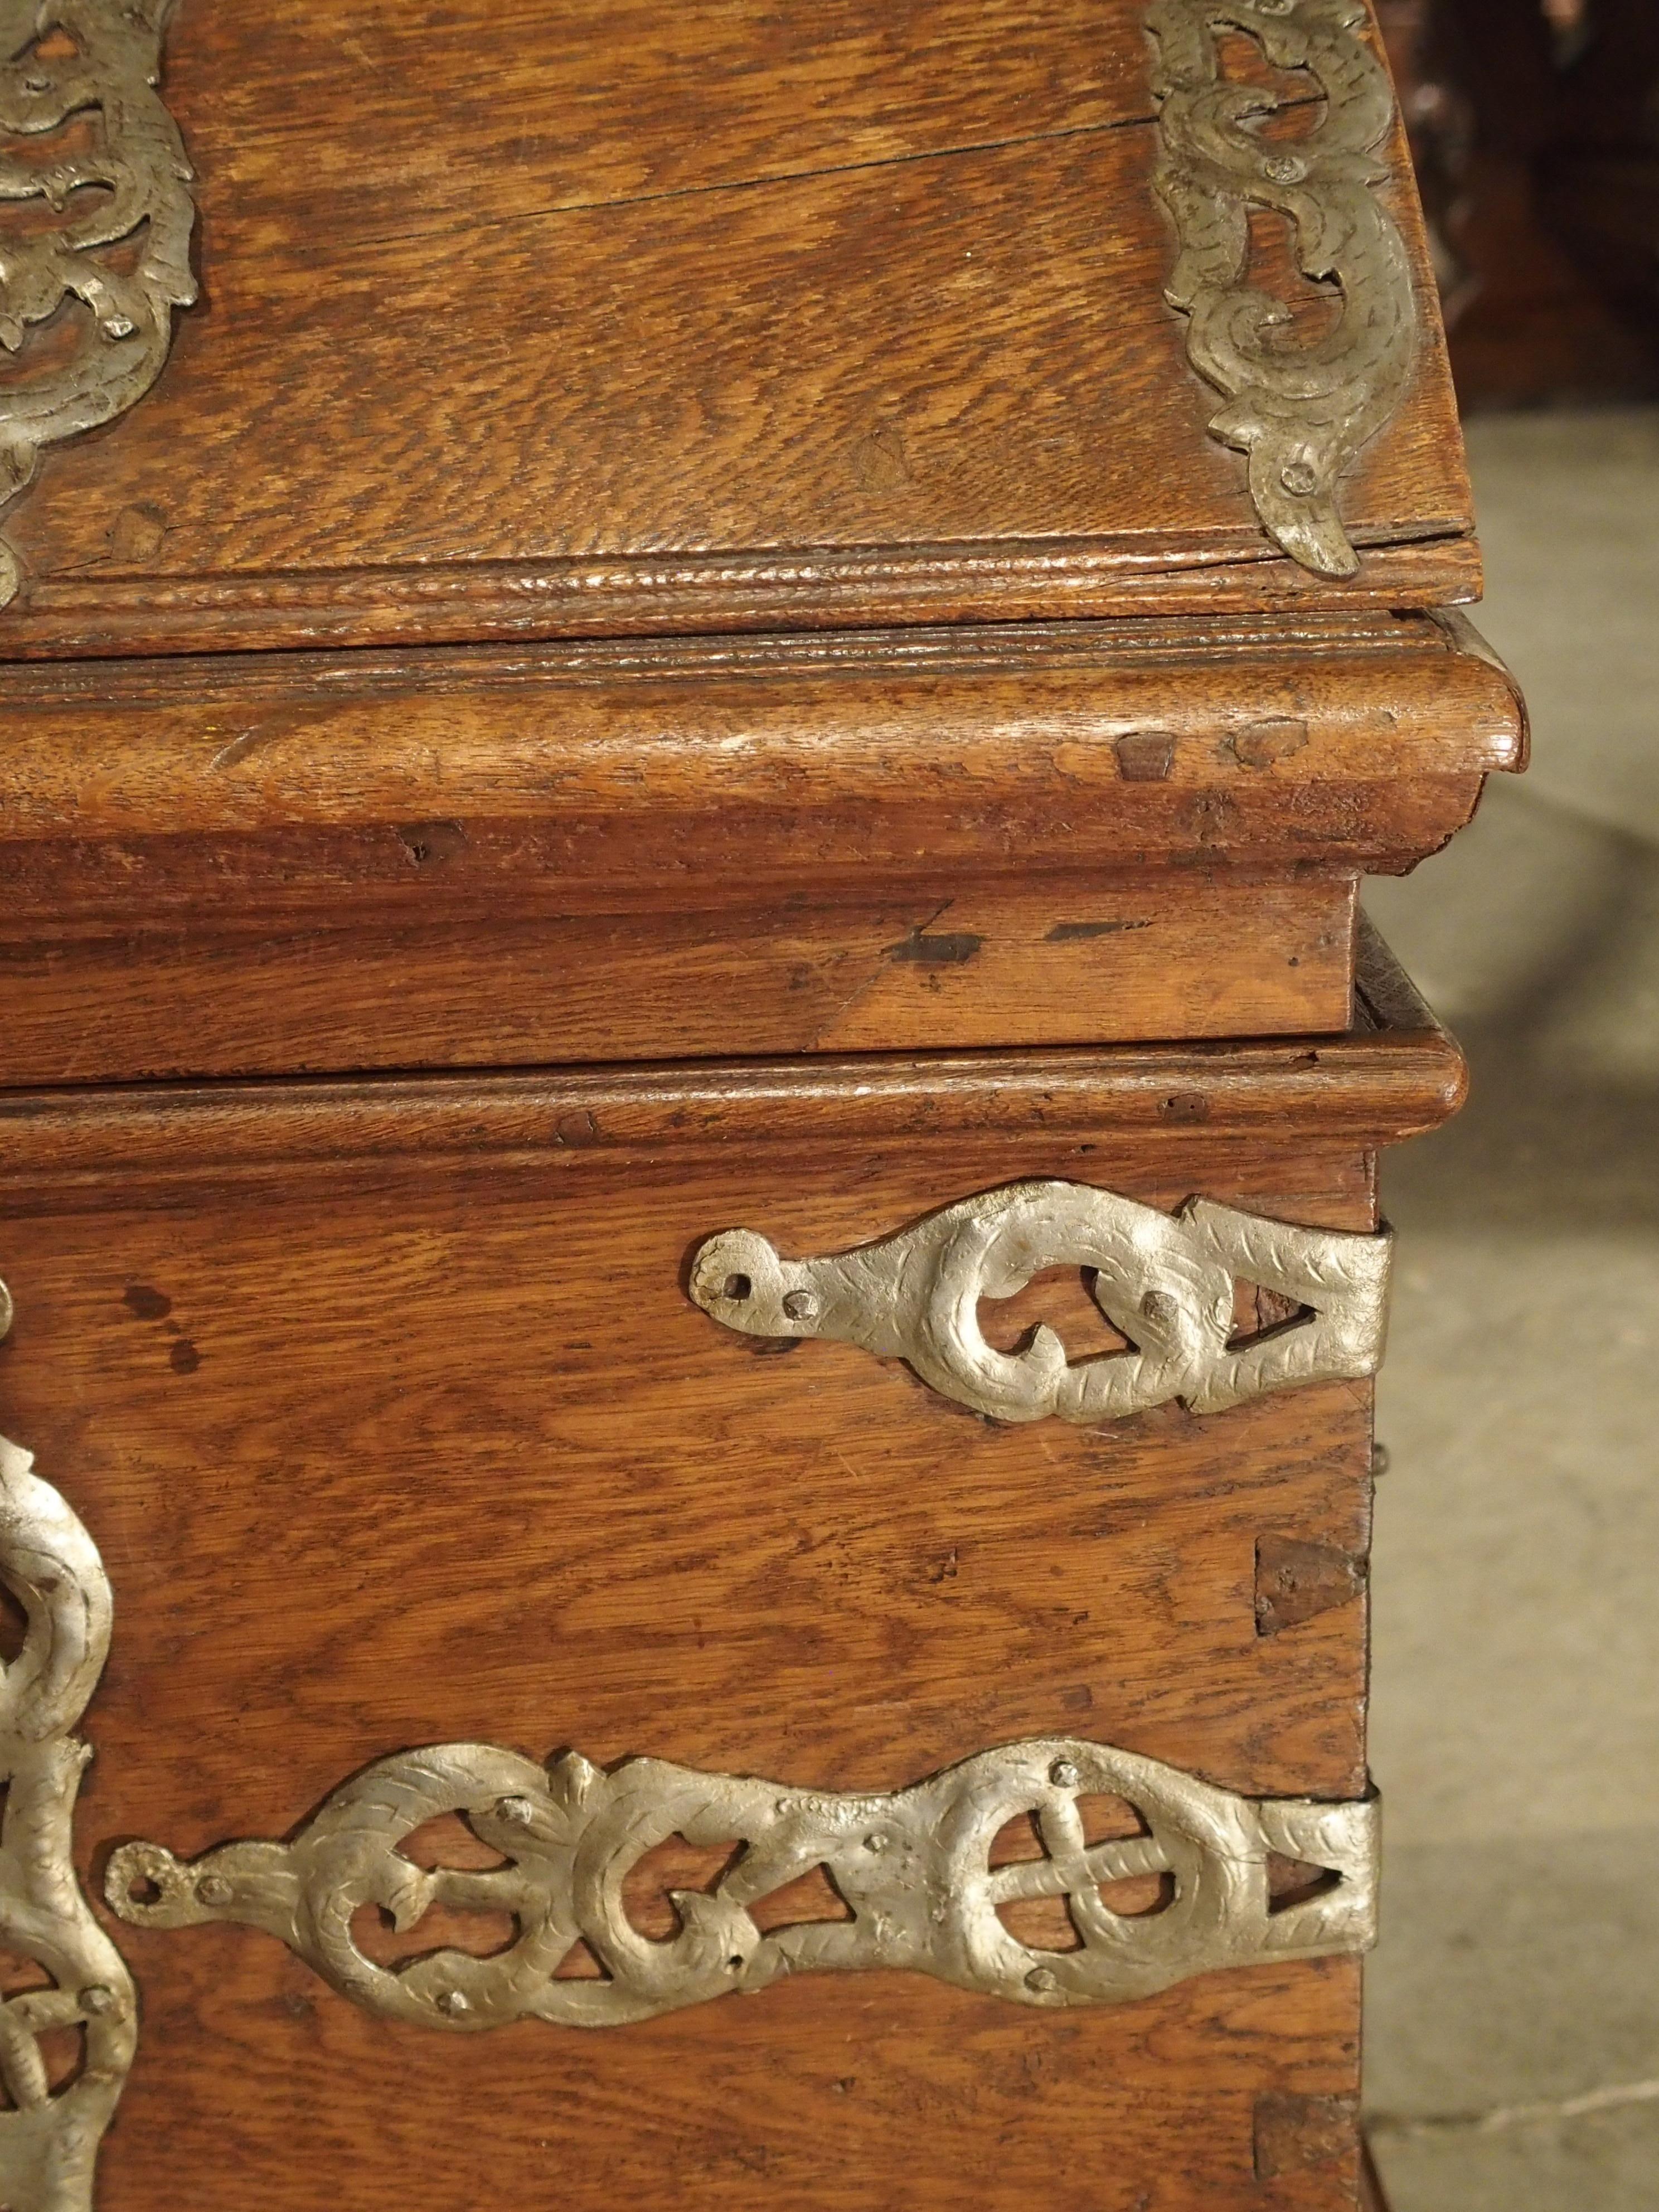 Diese hübsche Truhe aus Eichenholz im Barockstil hat einen gewölbten Deckel und skurrile Beschläge aus patiniertem Eisen. Die Truhe wurde in den 1700er Jahren (möglicherweise 1757) angefertigt. Diese Art von gewölbten Eichenstämmen mit dekorativen